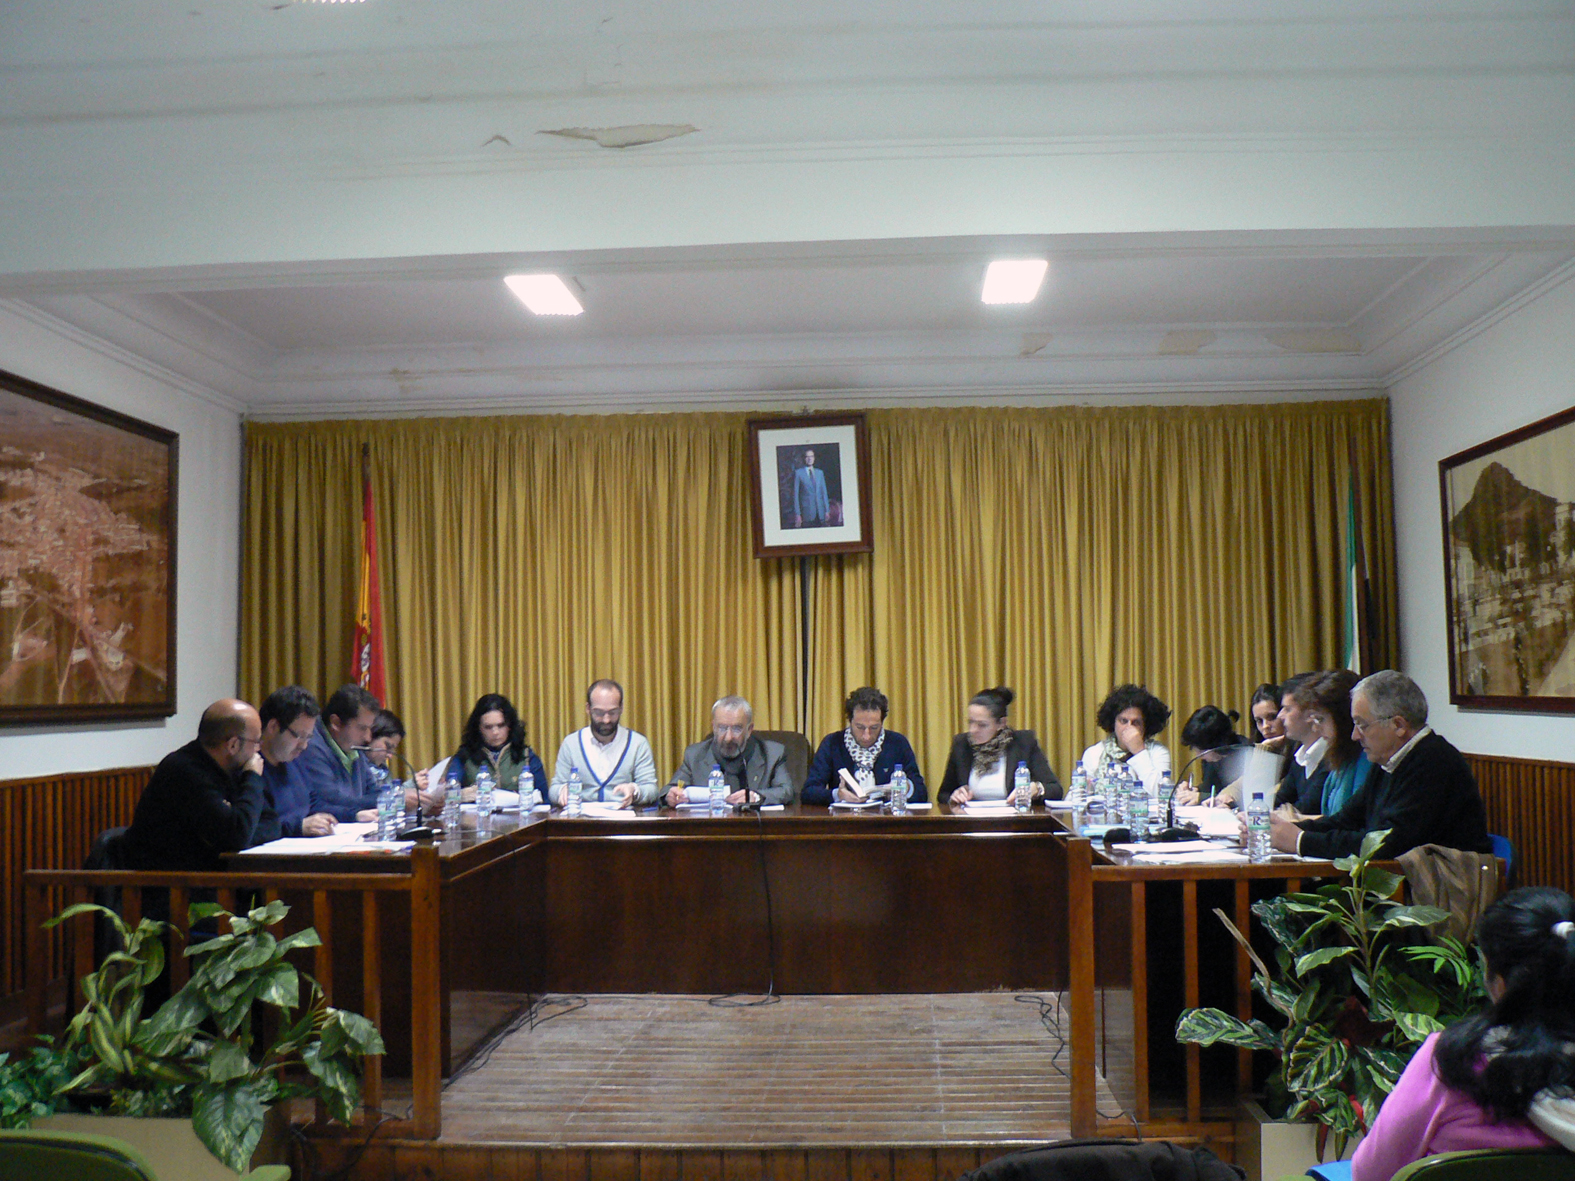 La Corporación Municipal celebró el pleno ordinario correspondiente al mes de febrero